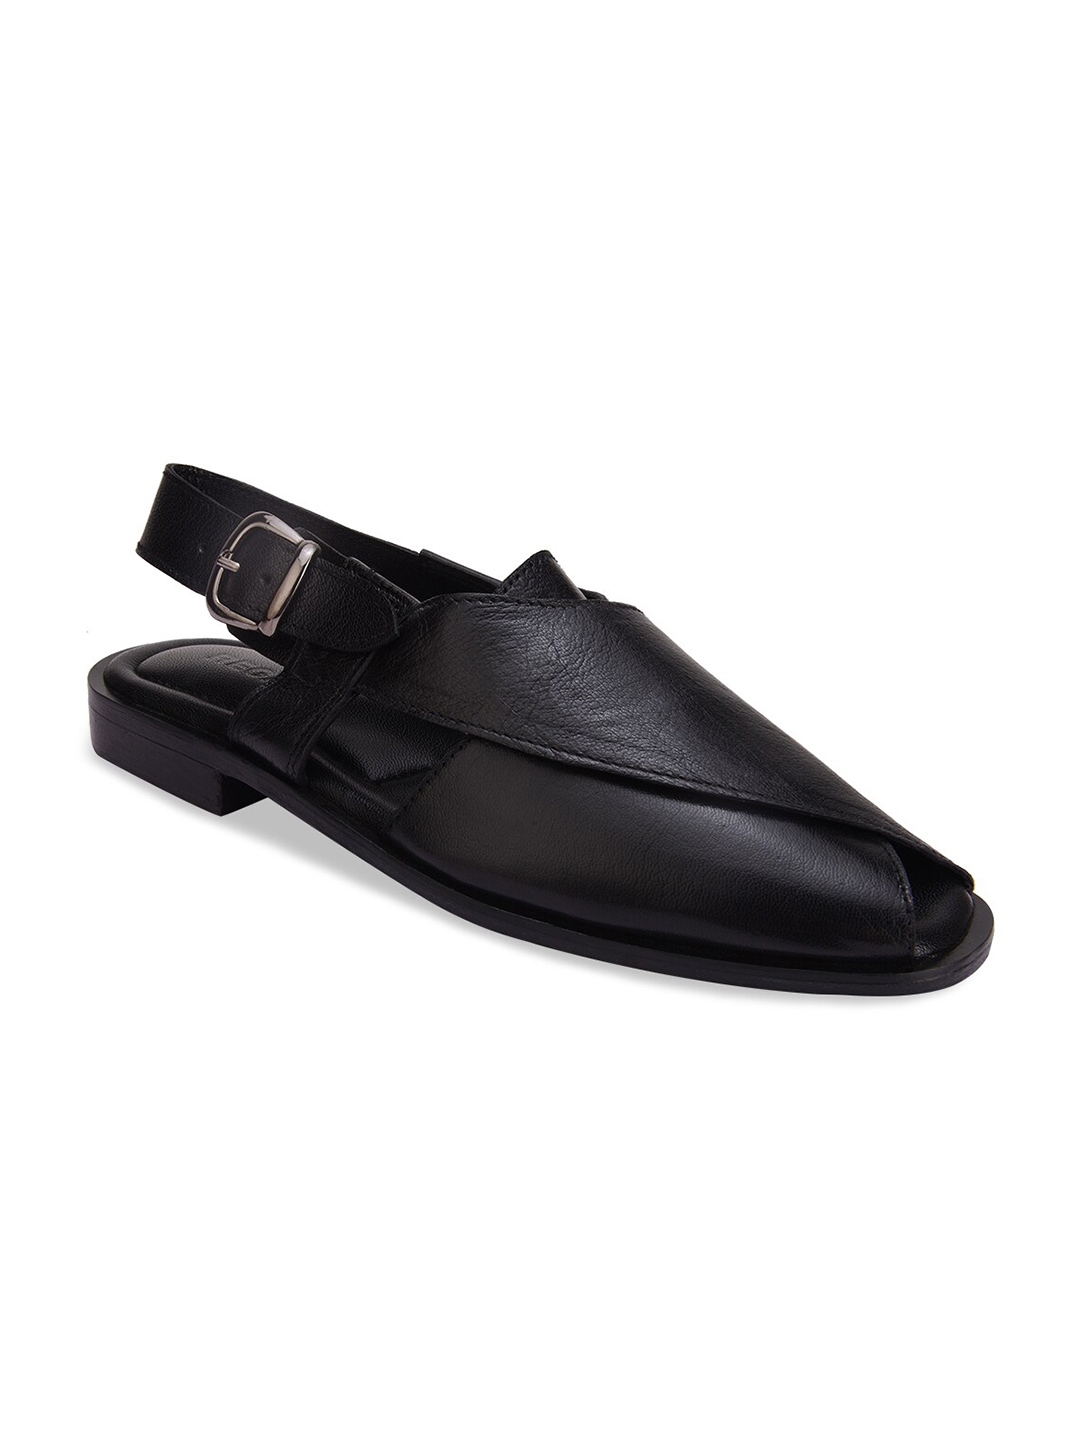 Buy Regal Men Leather Shoe Style Sandals - Sandals for Men 22000908 ...